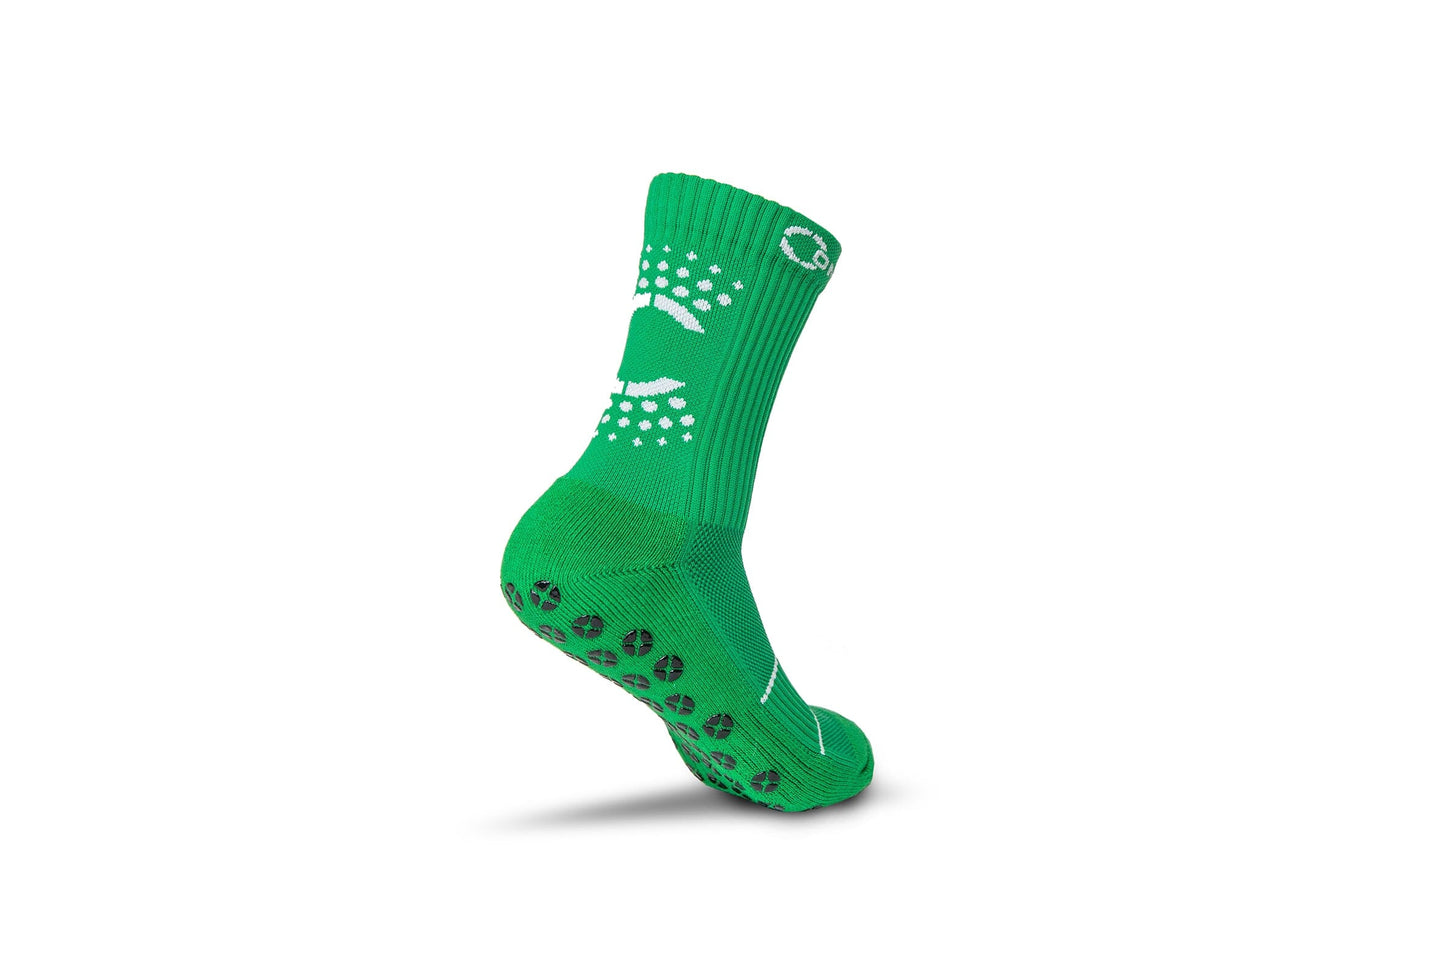 Control Sox 2.0 - Celtic Green Grip Socks Control Sox 